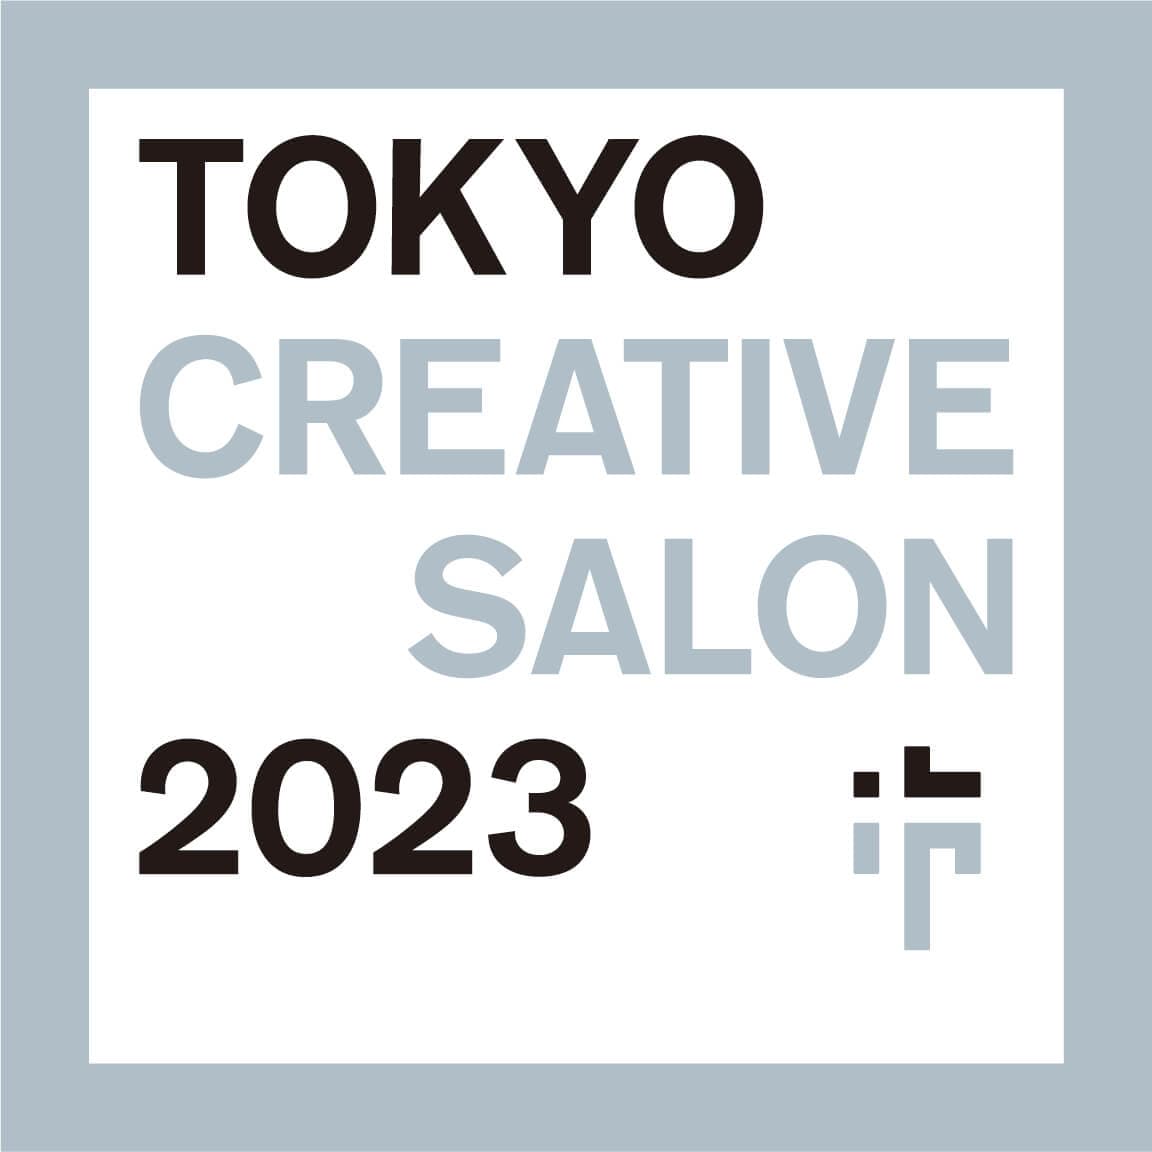 TOKYO CREATIVE SALON 2023